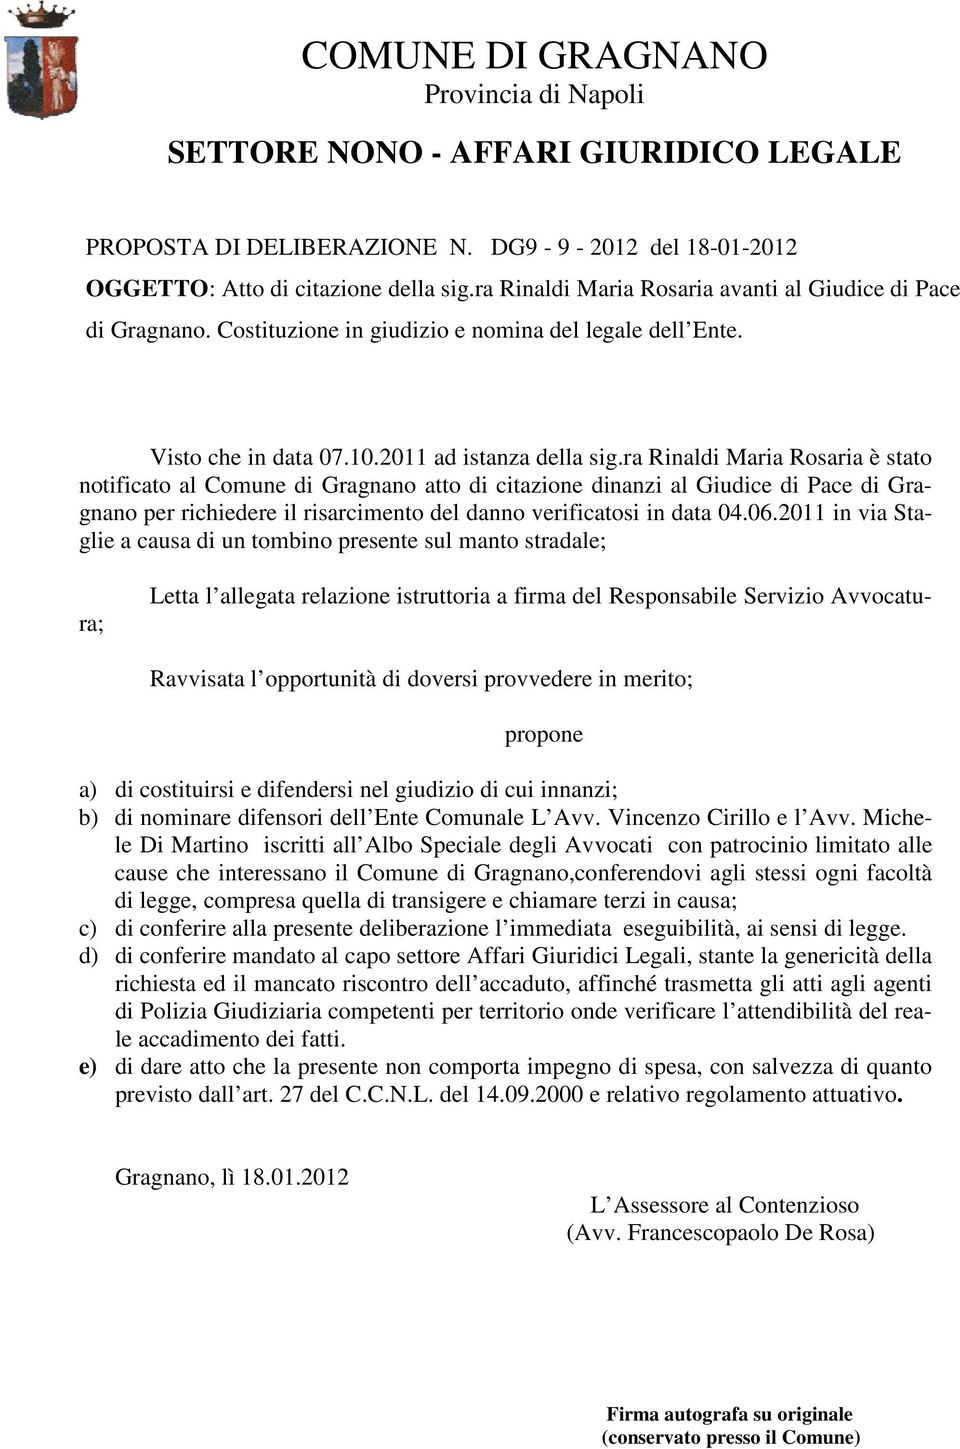 ra Rinaldi Maria Rosaria è stato notificato al Comune di Gragnano atto di citazione dinanzi al Giudice di Pace di Gragnano per richiedere il risarcimento del danno verificatosi in data 04.06.